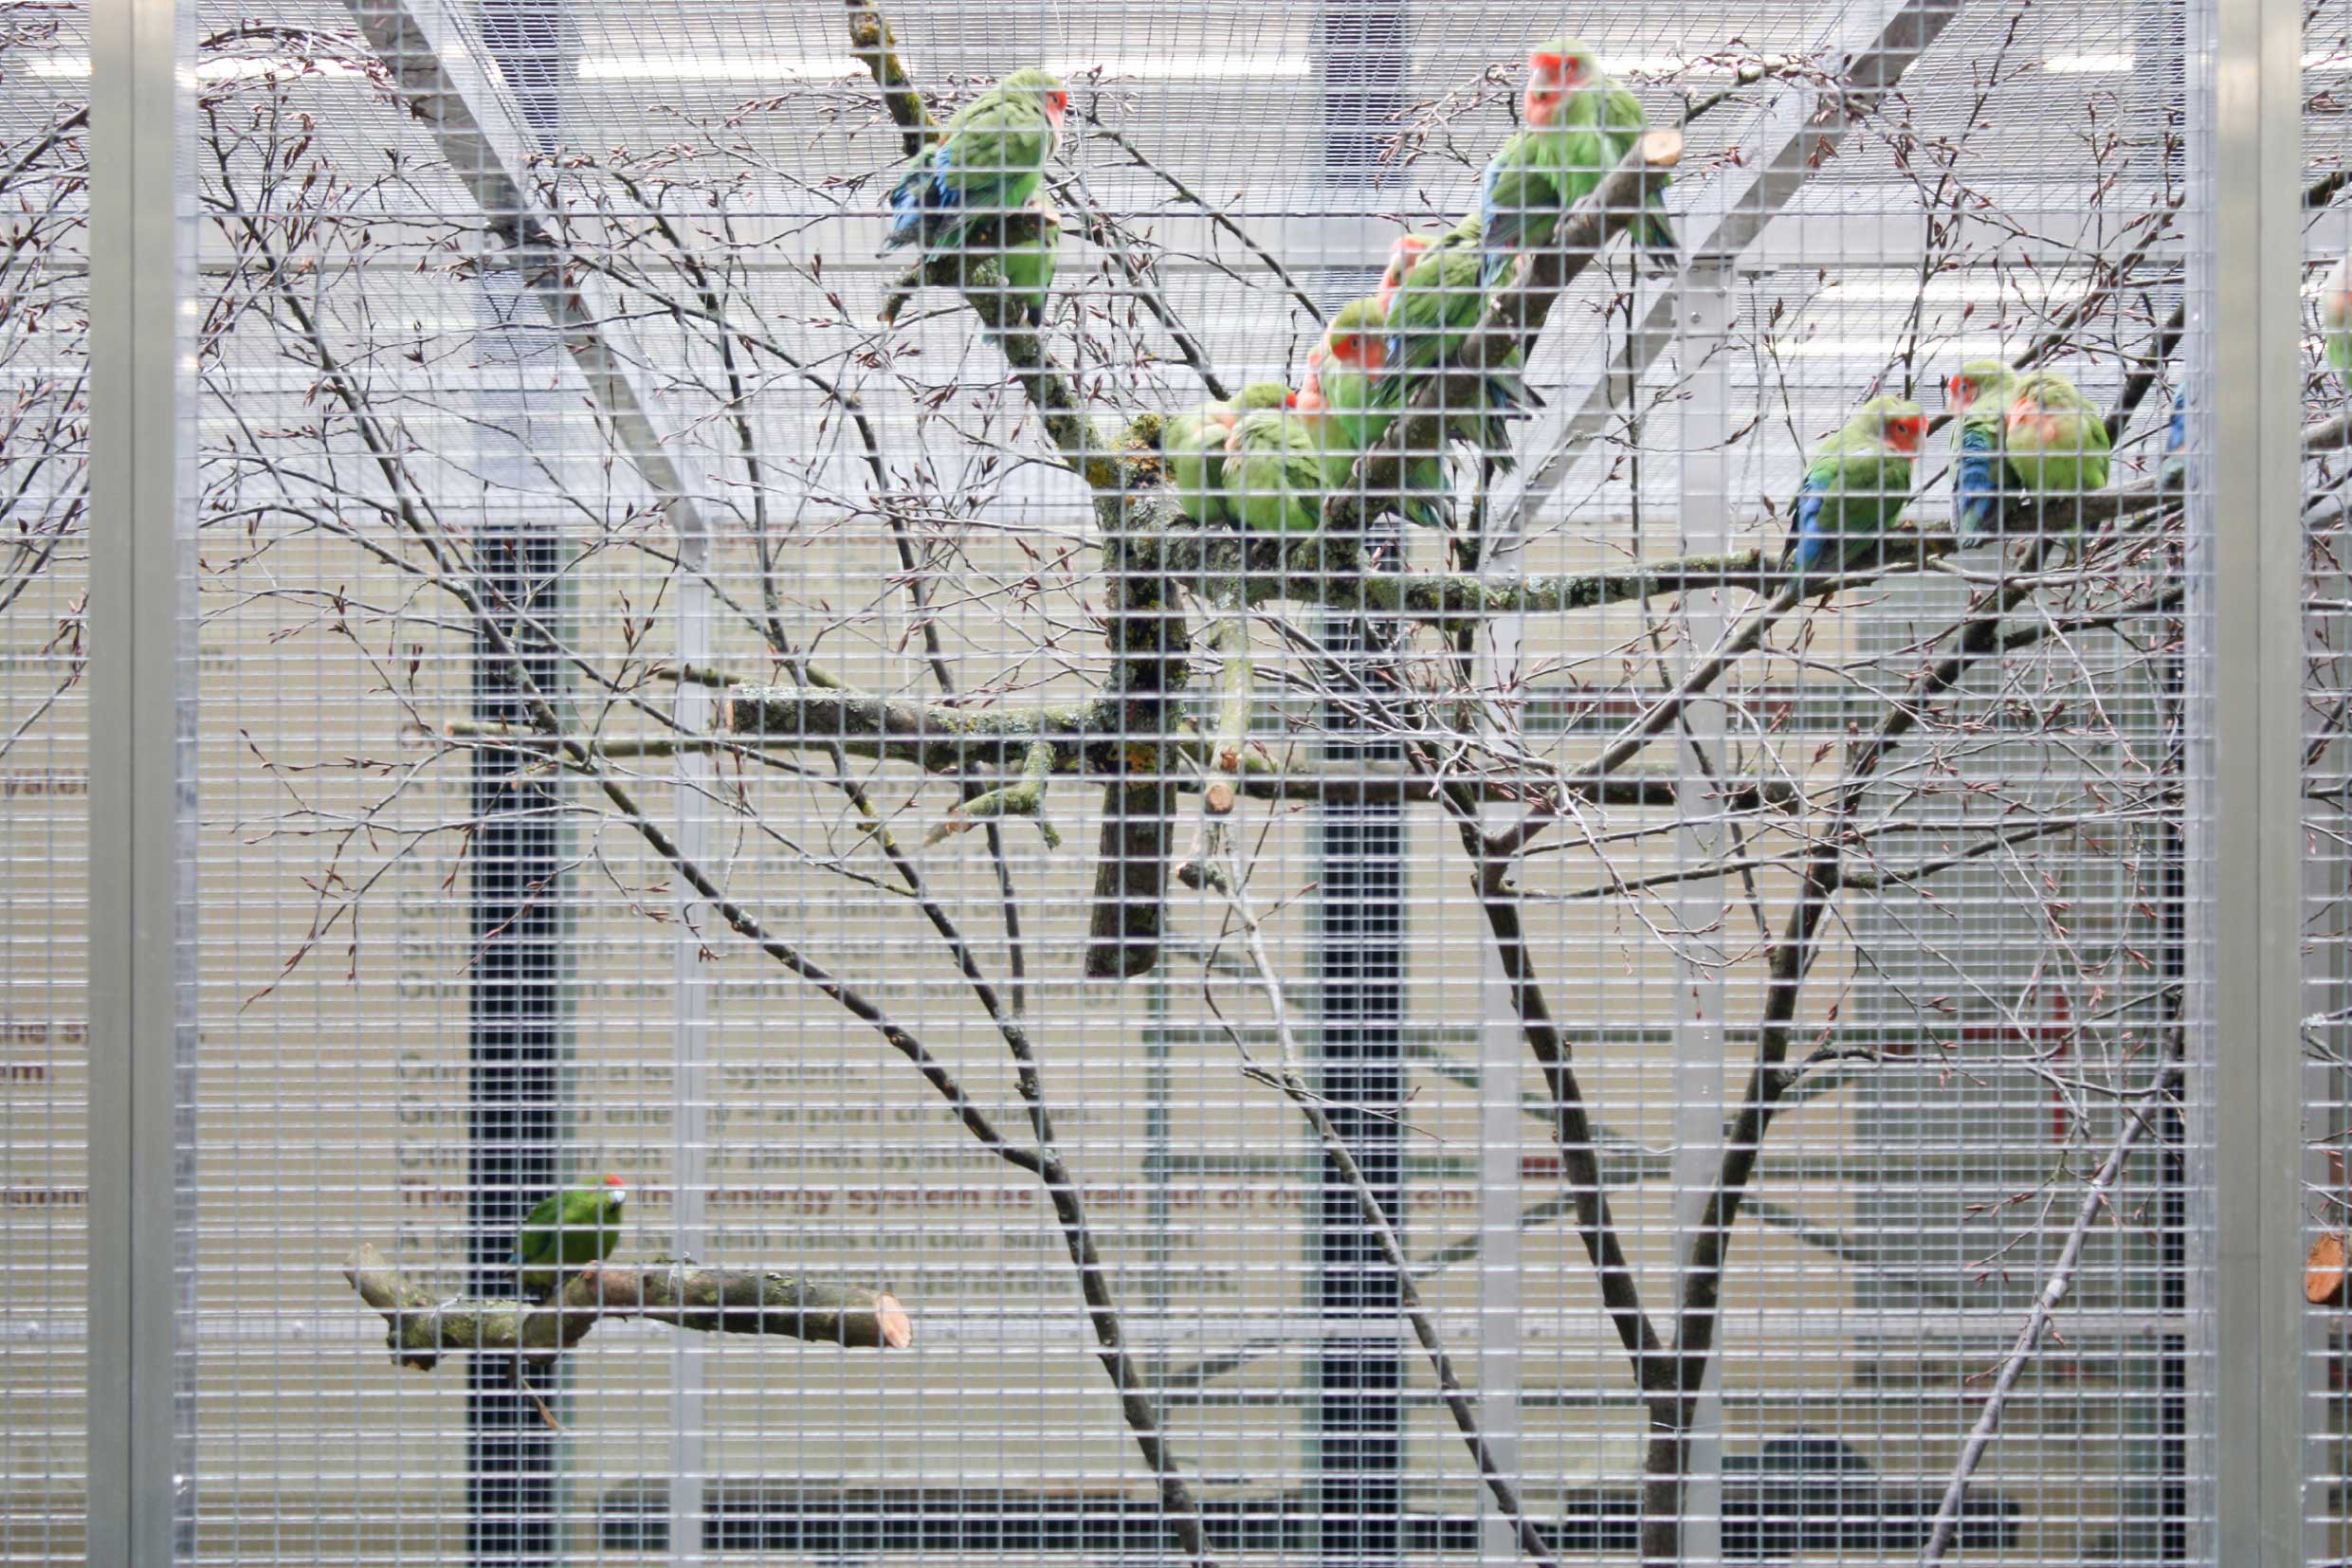 alex-hanimann-installation-birdwatching-v-7